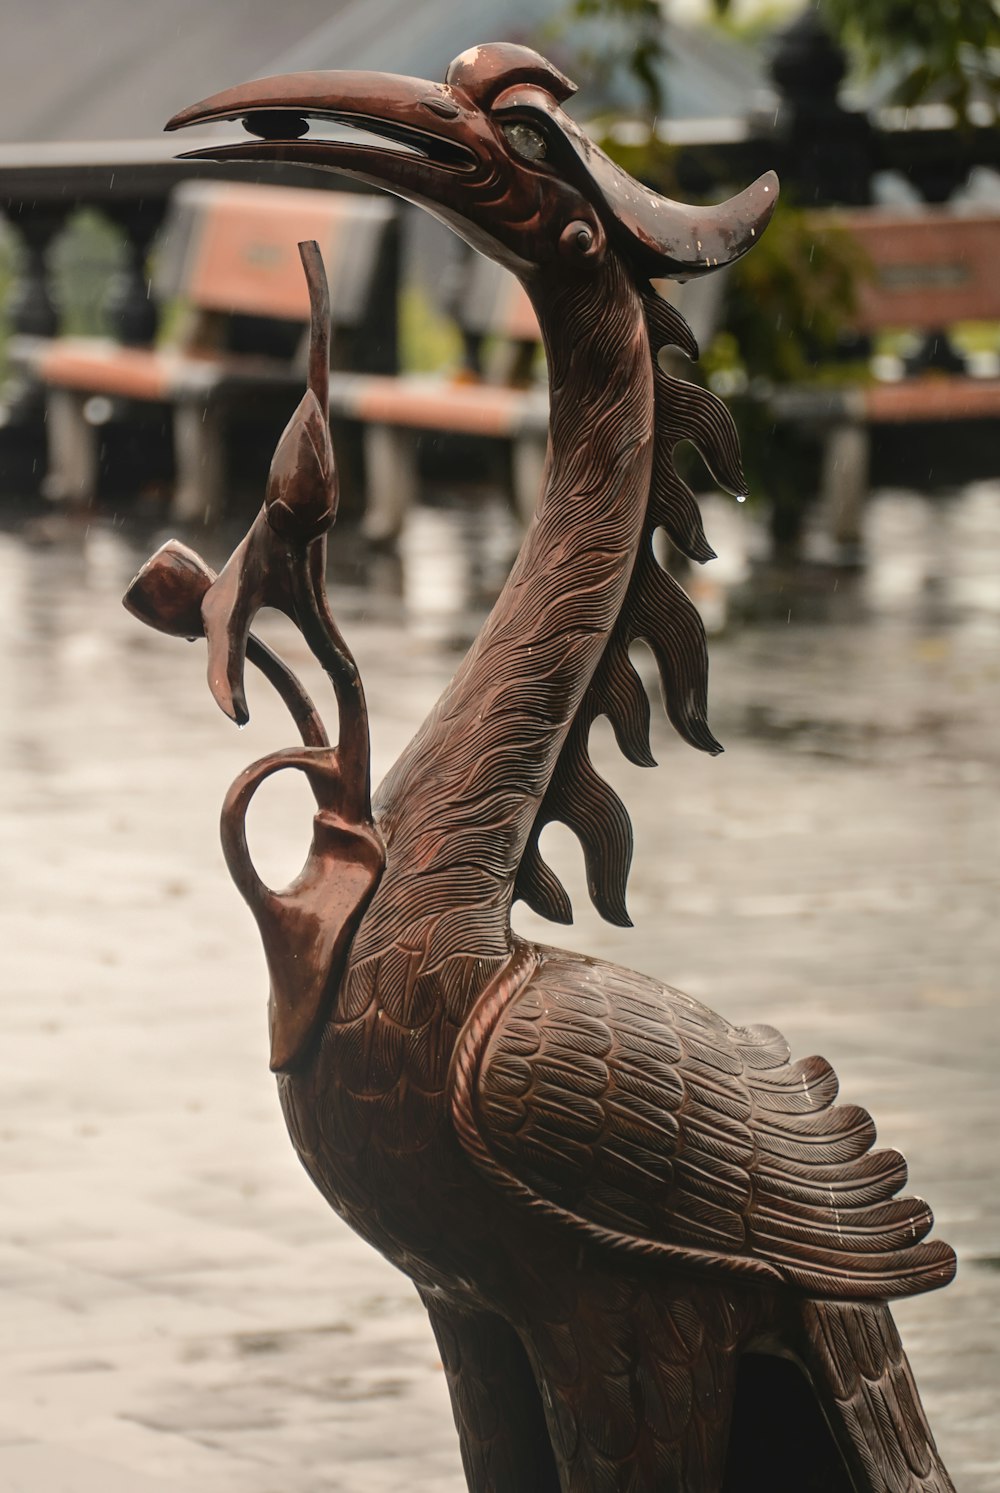 a statue of a bird with a long beak